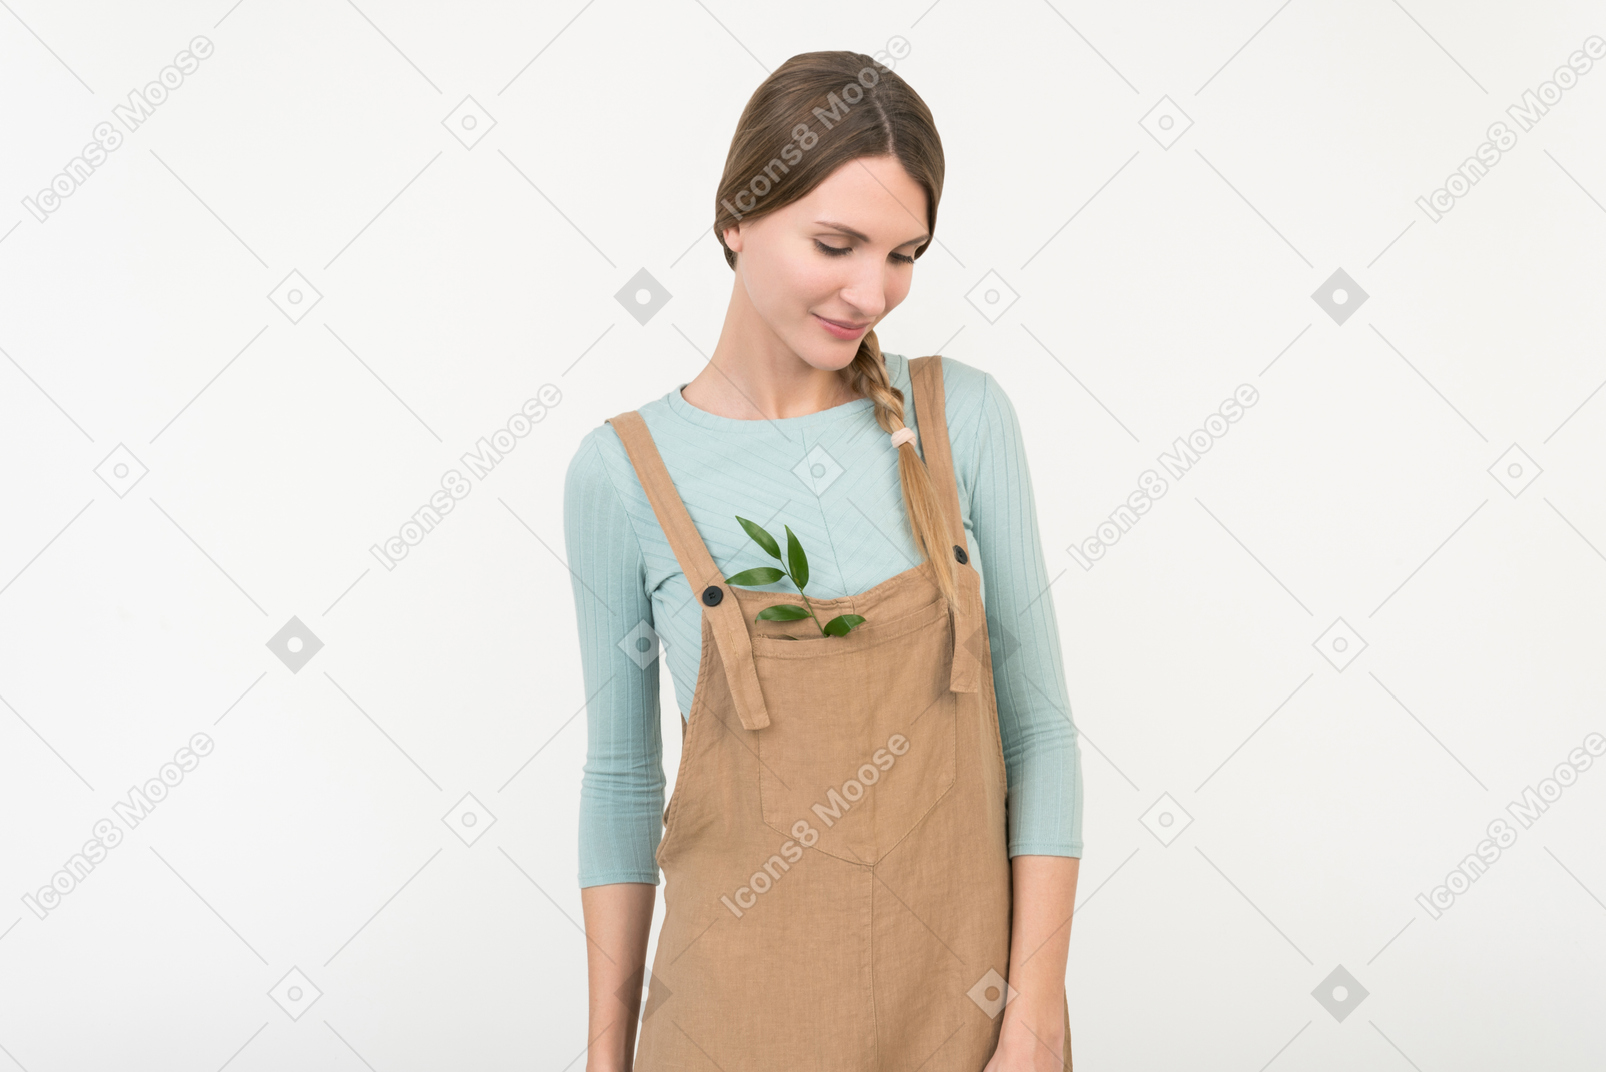 Jeune agricultrice debout avec une brindille verte dans sa combinaison